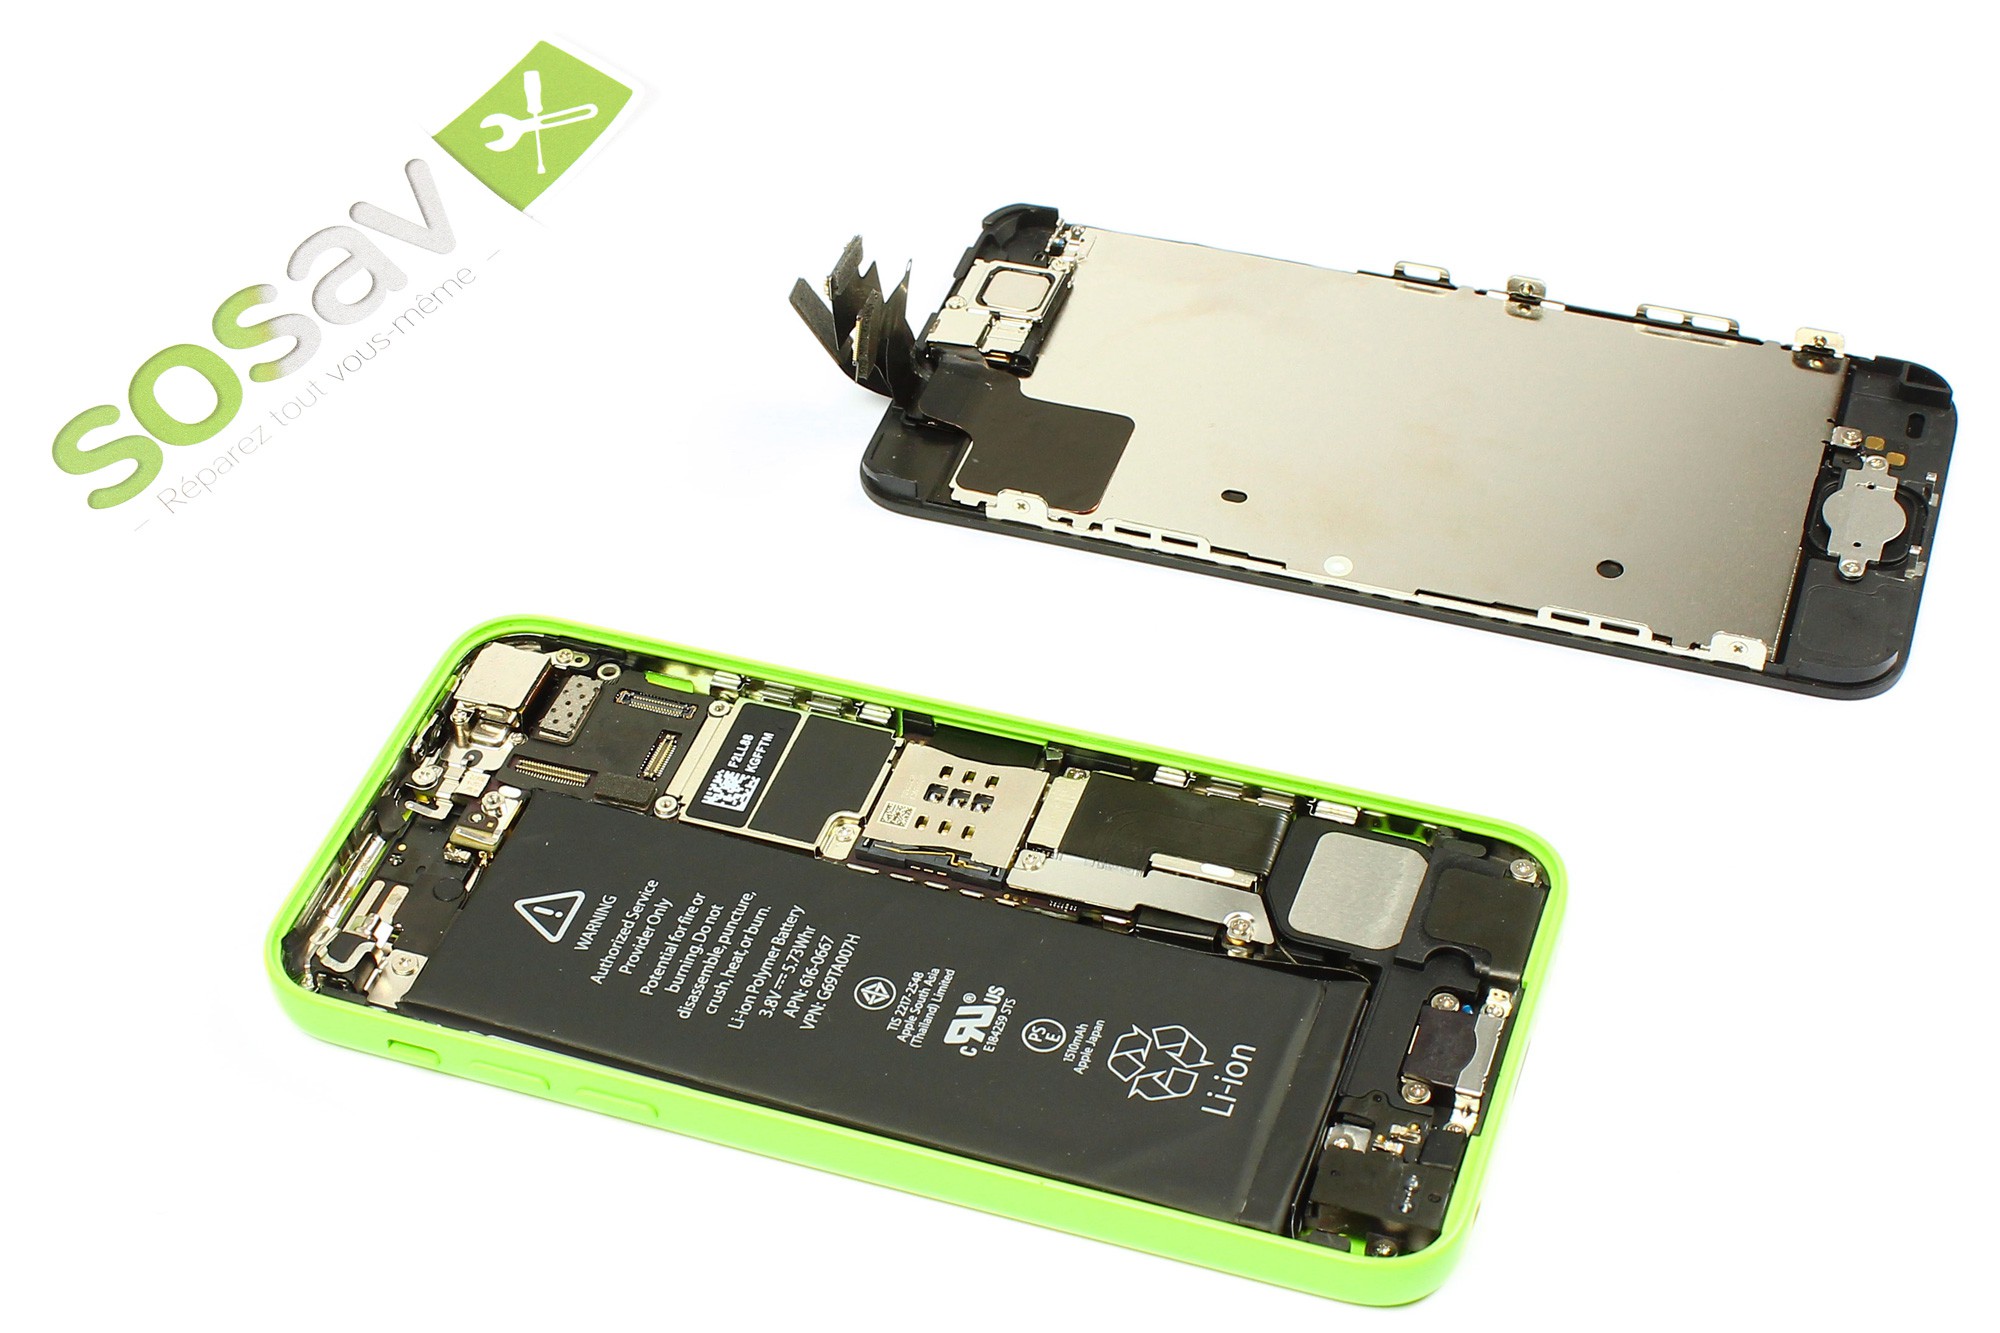 SOSav - Kit de réparation écran compatible iPhone XR